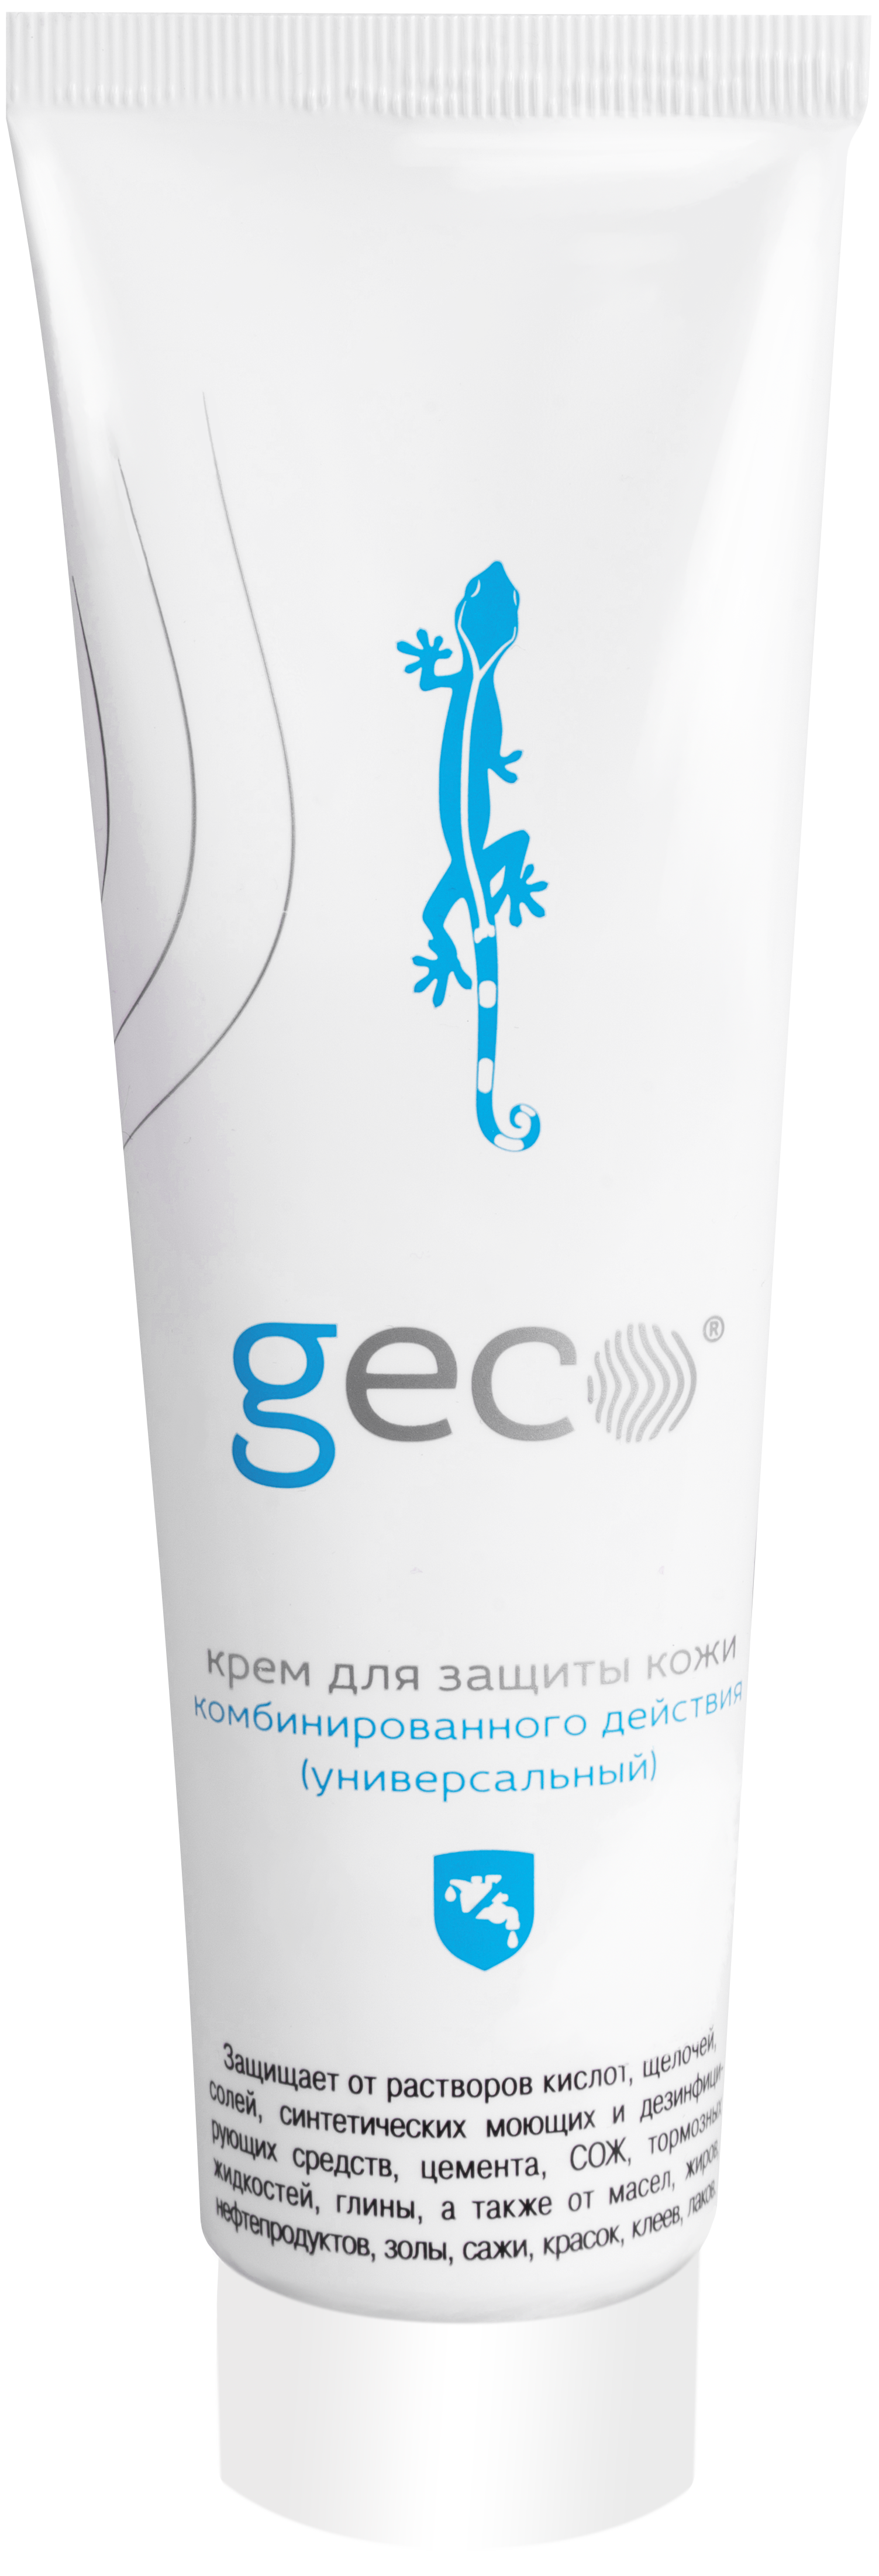 Средство для сильных загрязнений. Крем Geco гидрофобный 100 мл, (1210v) крем Geco гидрофобный 100 мл. Крем Geco гидрофильный 100 мл. Паста очищающая Geco. Крем Geco регенерирующий.